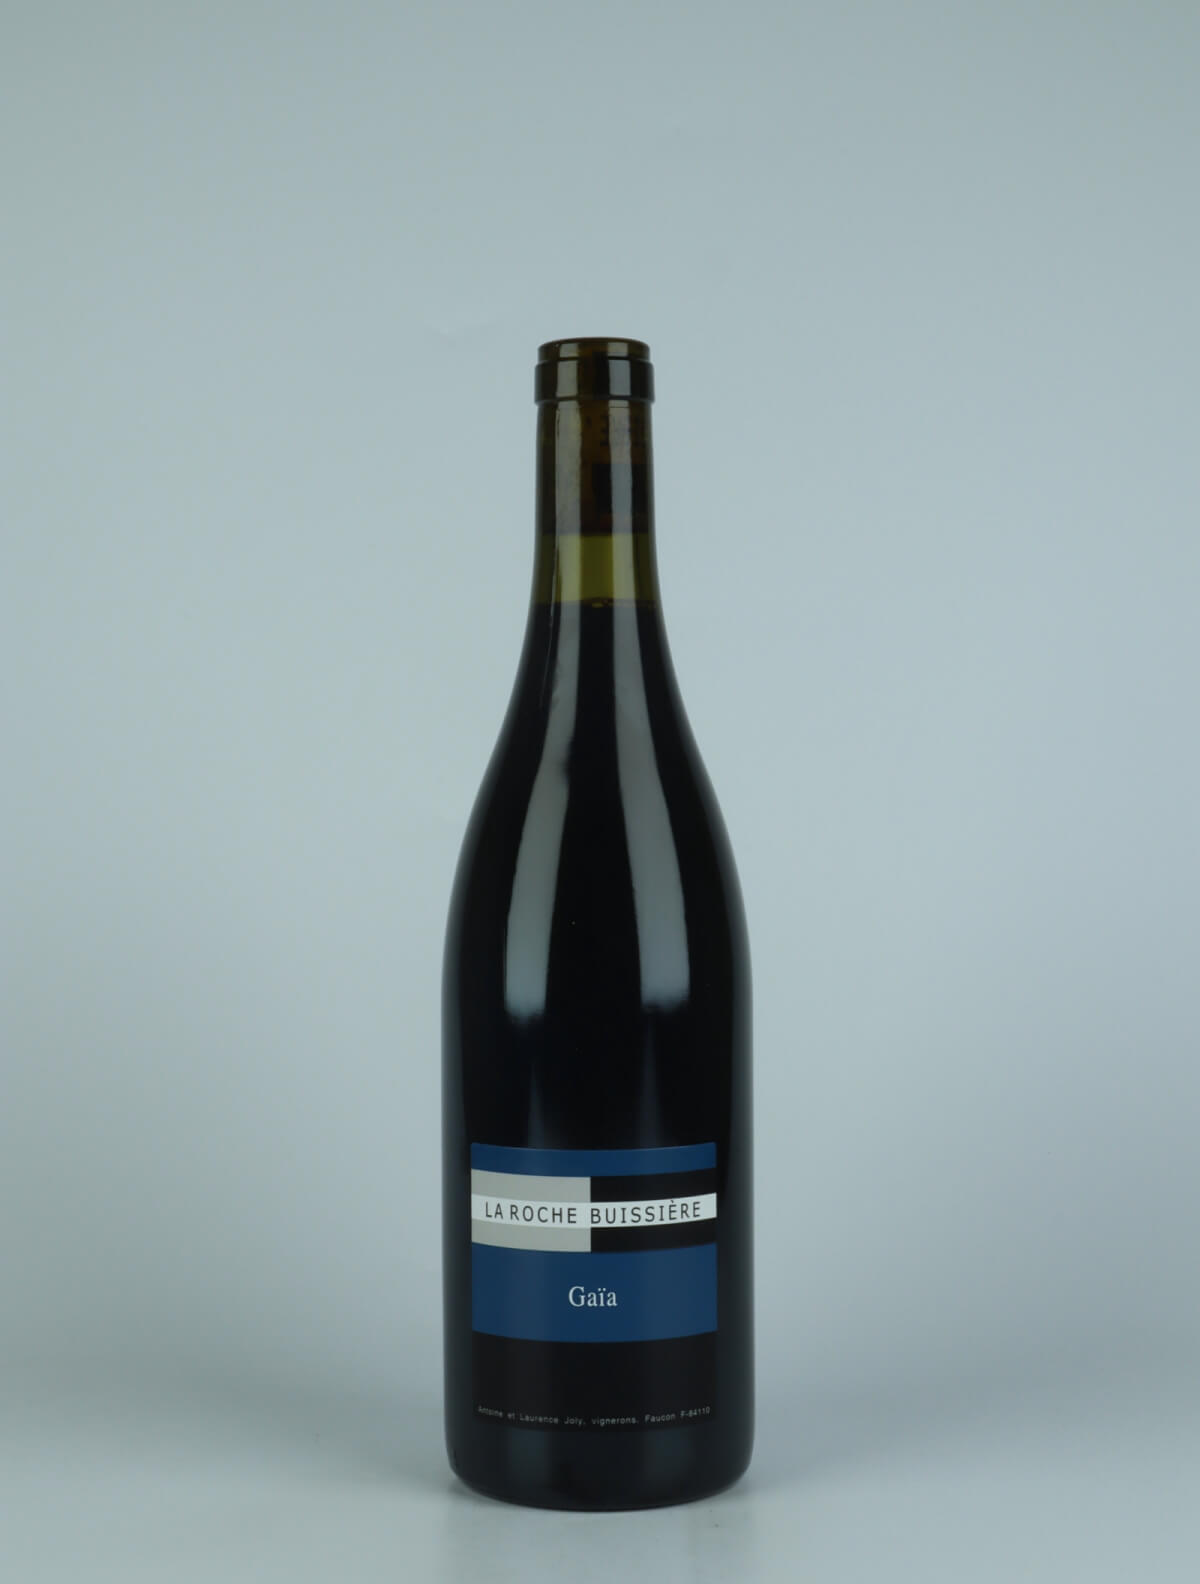 En flaske 2020 Gaïa Rødvin fra La Roche Buissière, Rhône i Frankrig